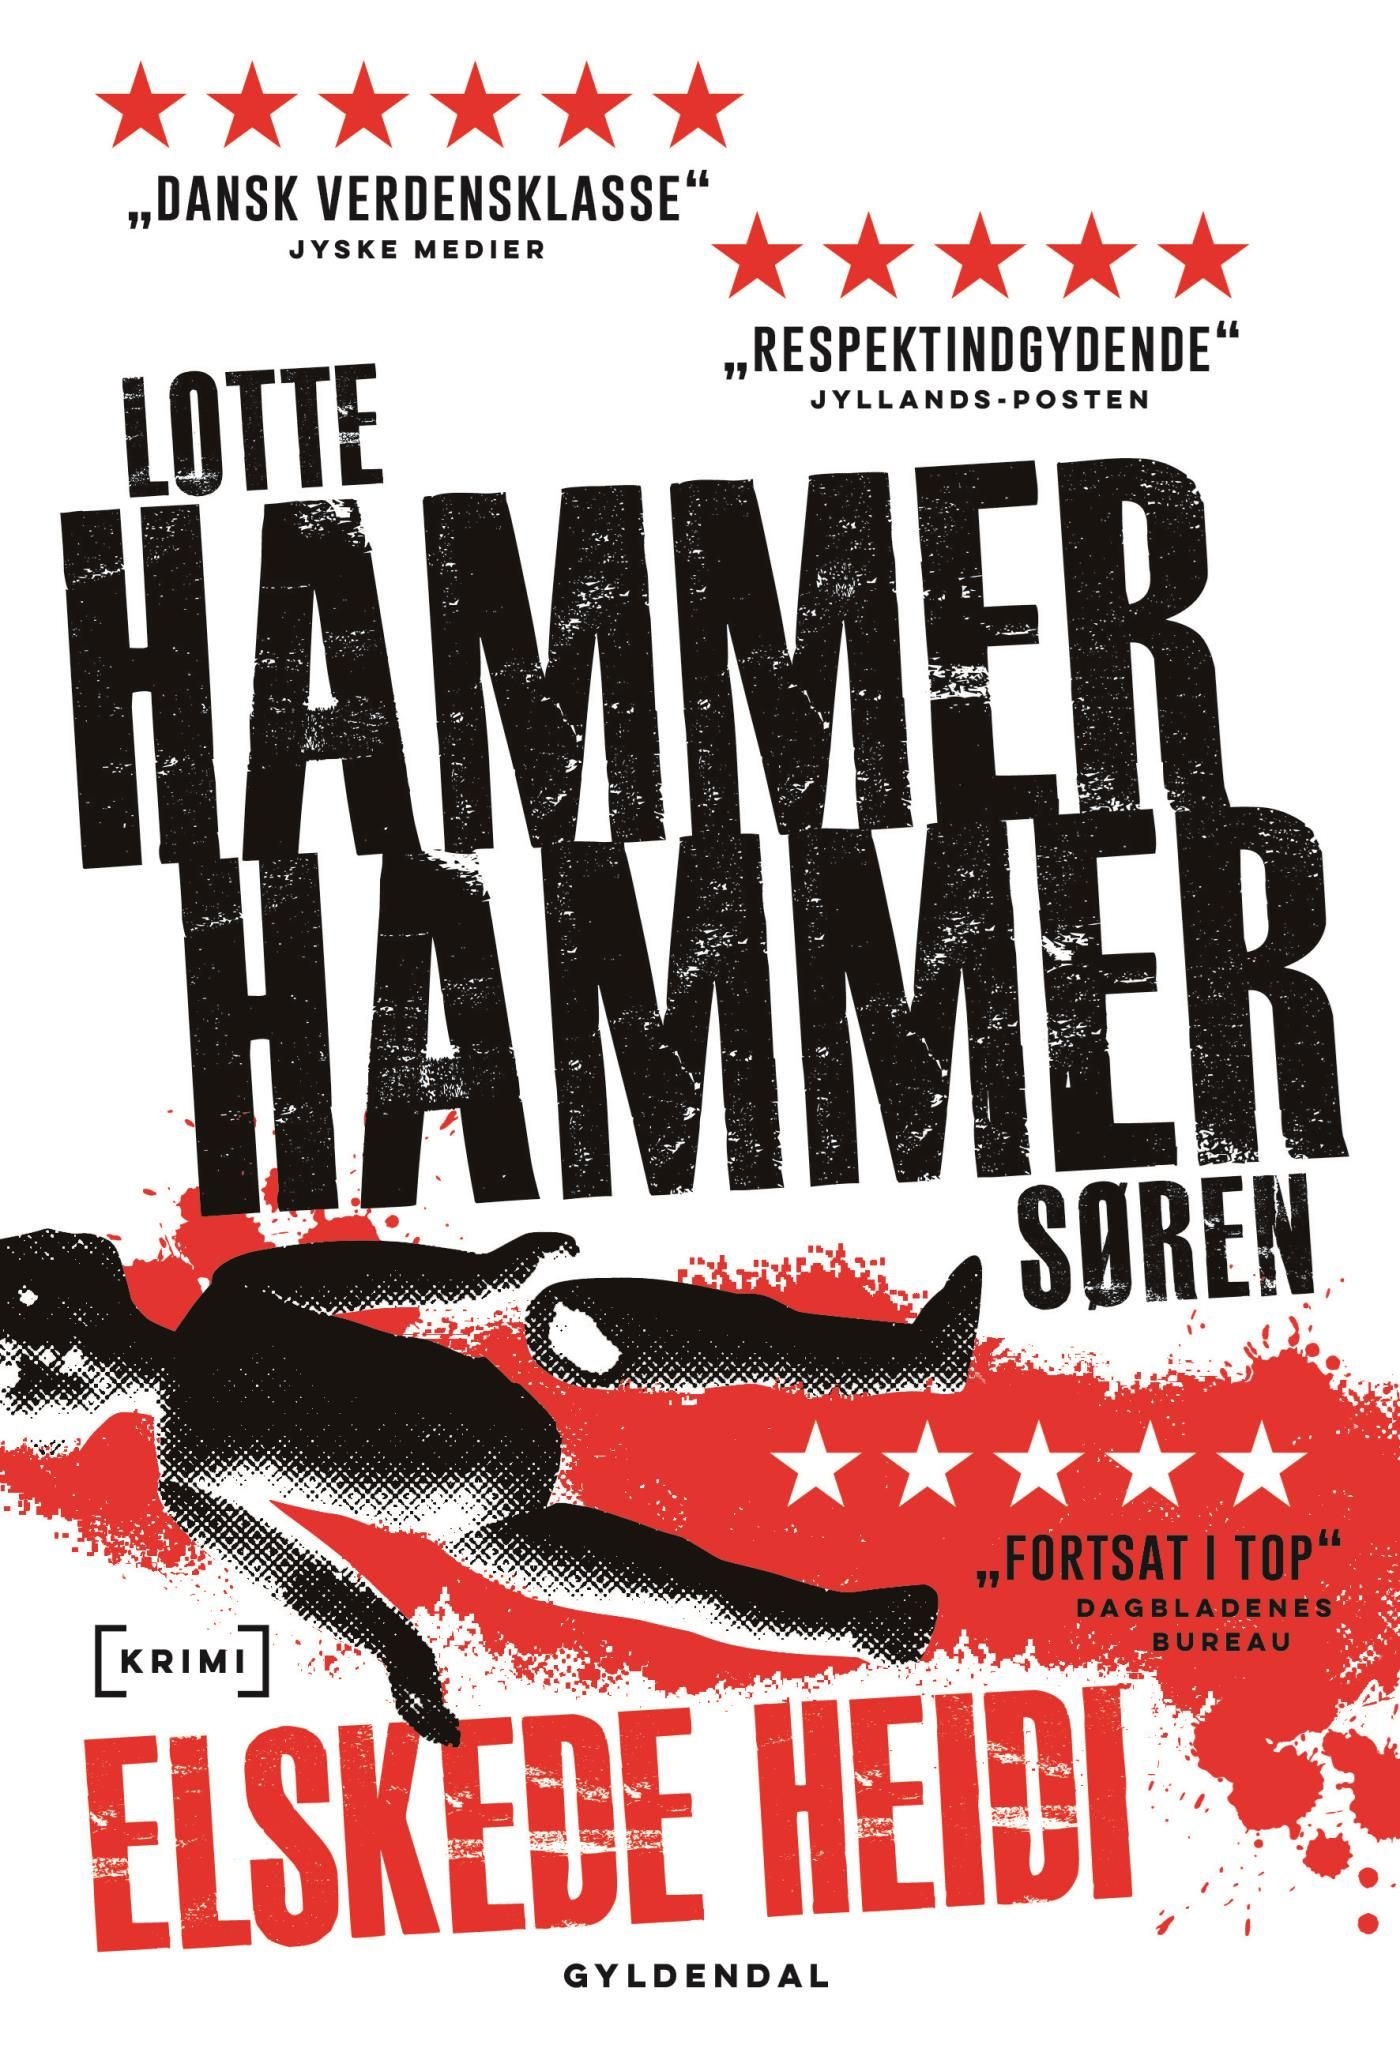 Elskede Heidi, e-bog af Lotte og Søren Hammer